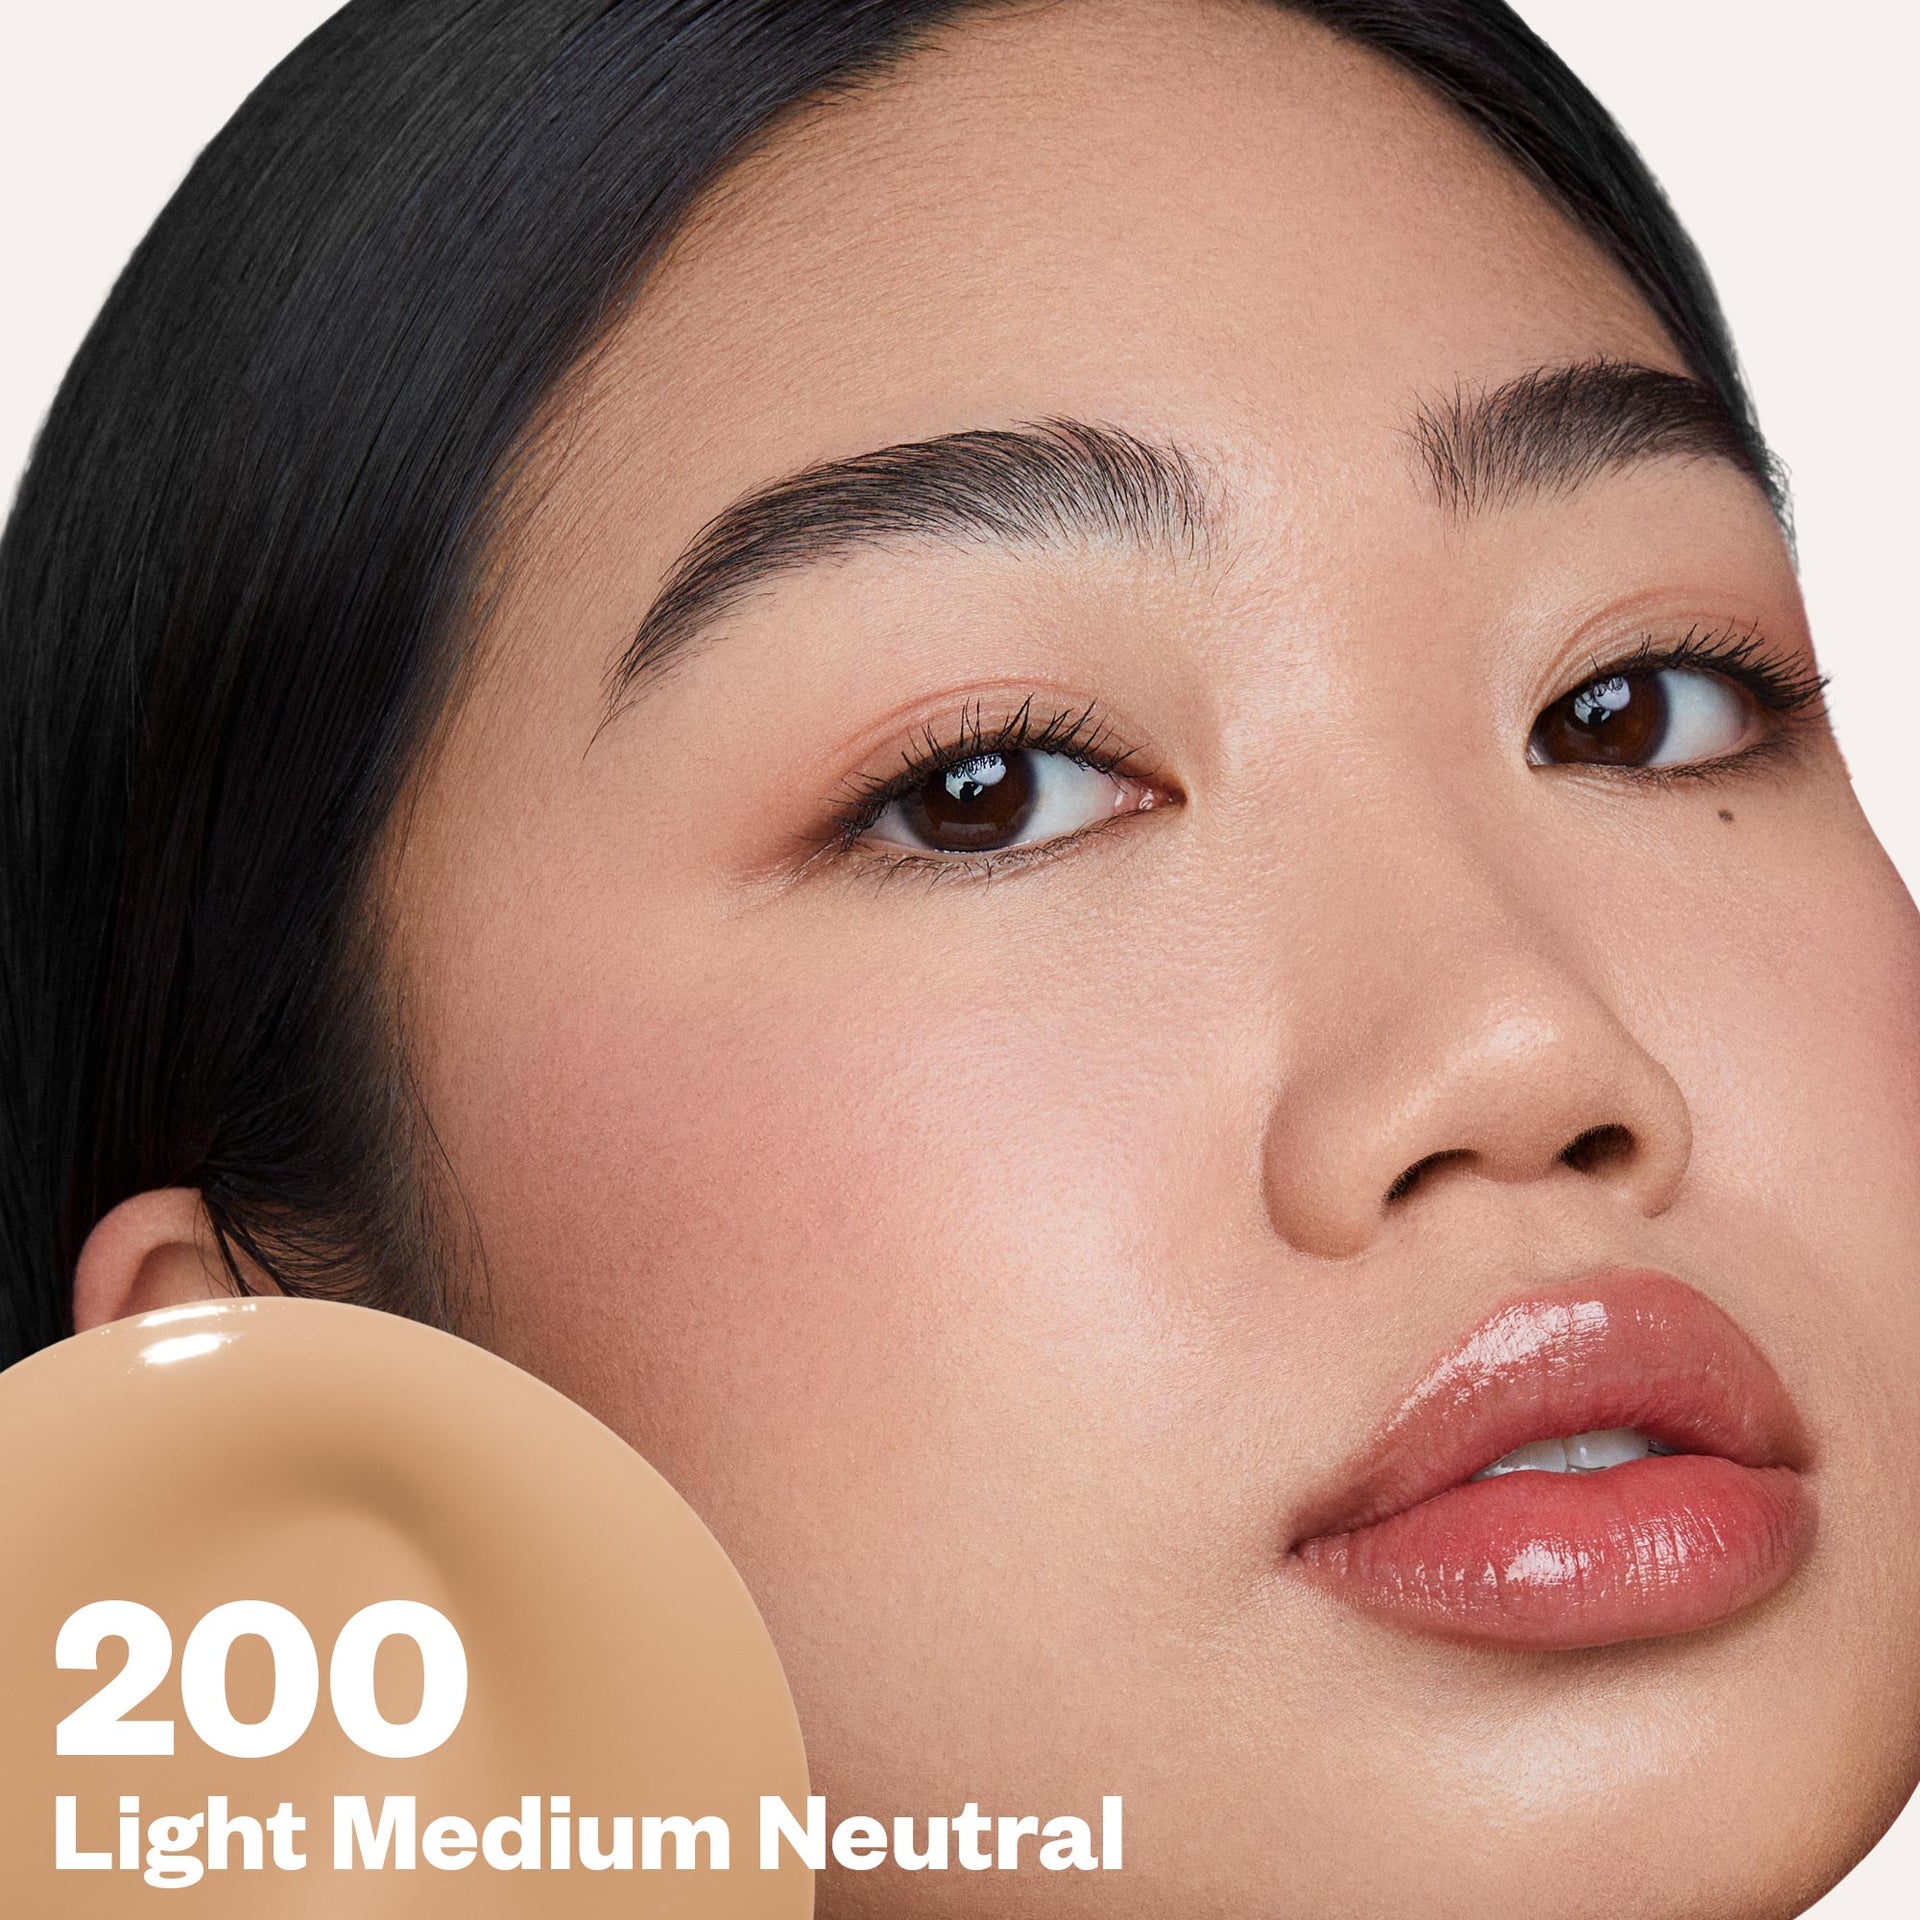 Light Medium Neutral 200 Improving Foundation SPF 25